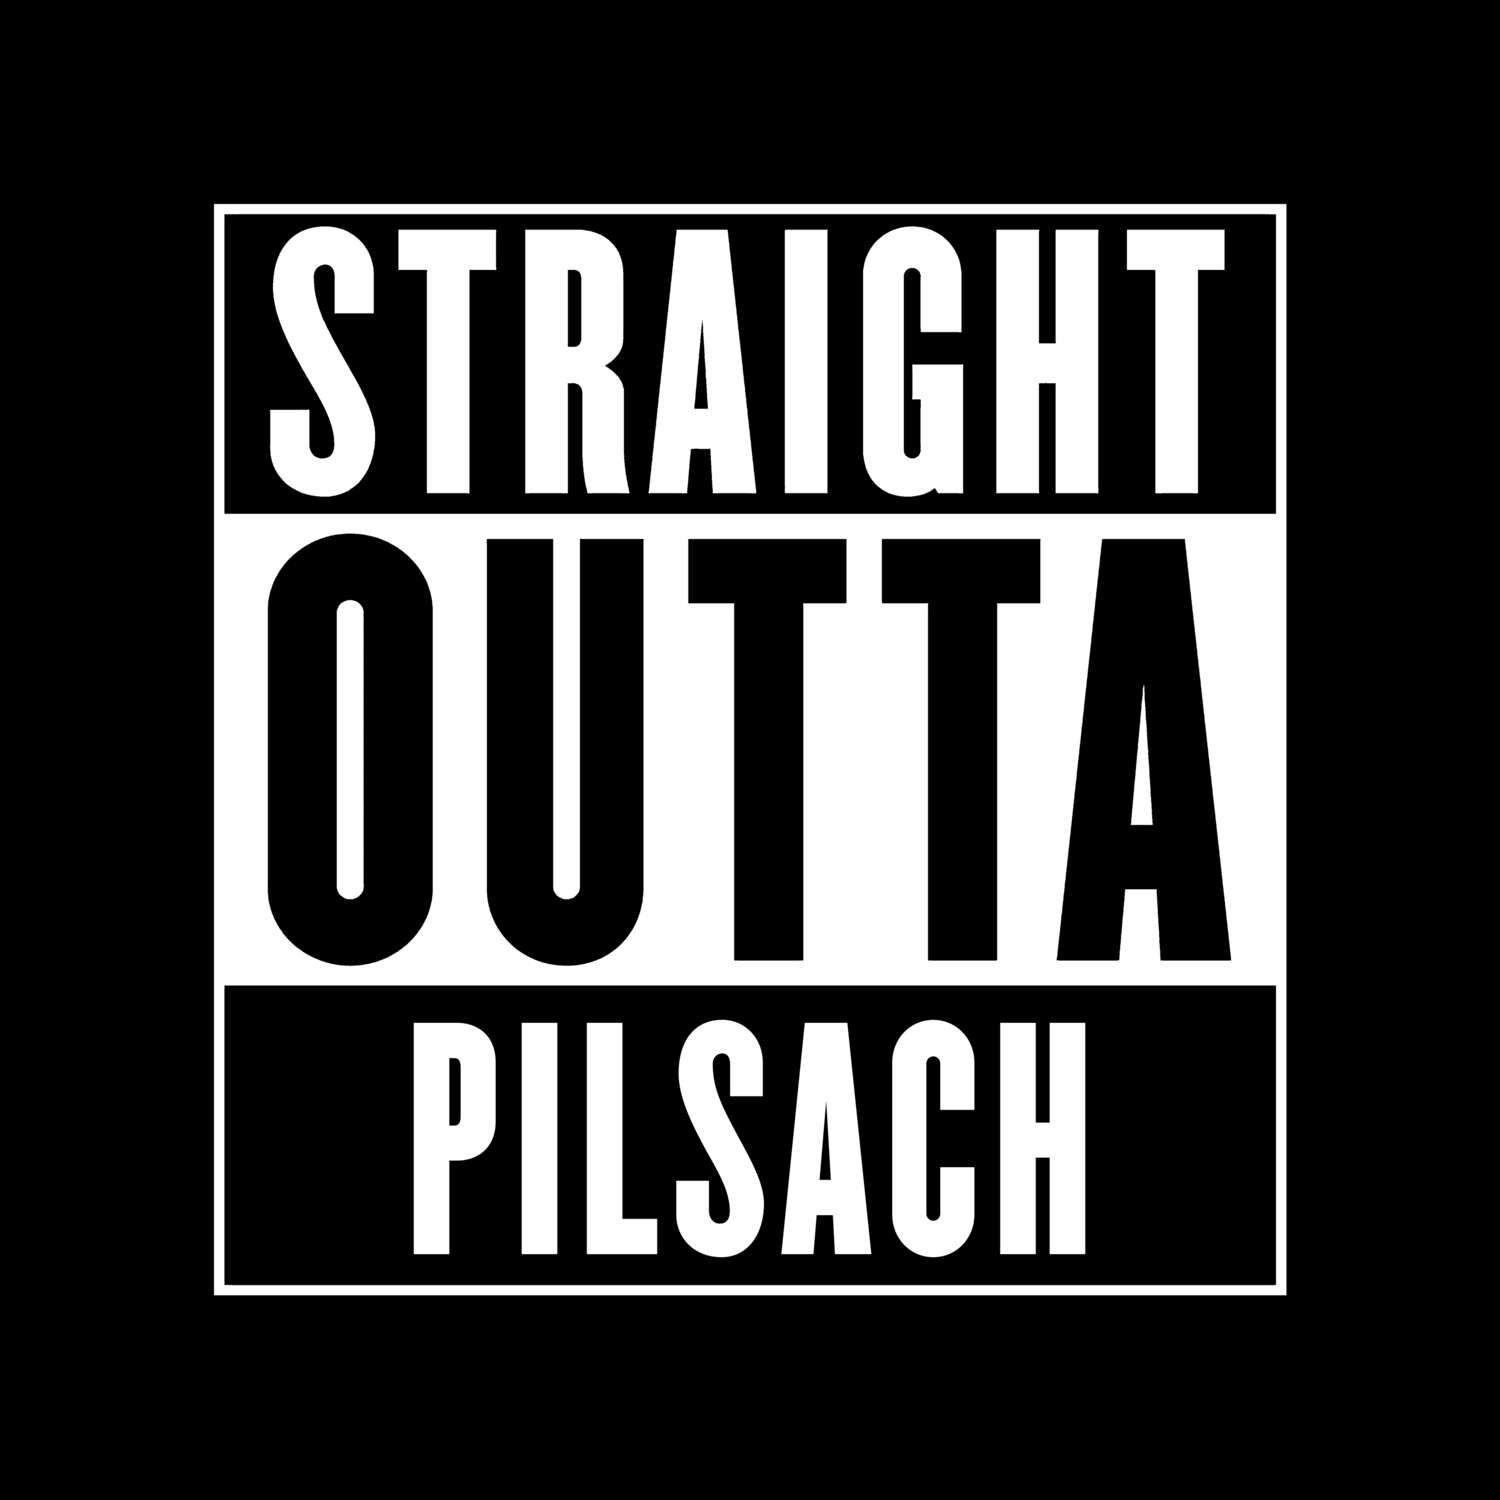 Pilsach T-Shirt »Straight Outta«